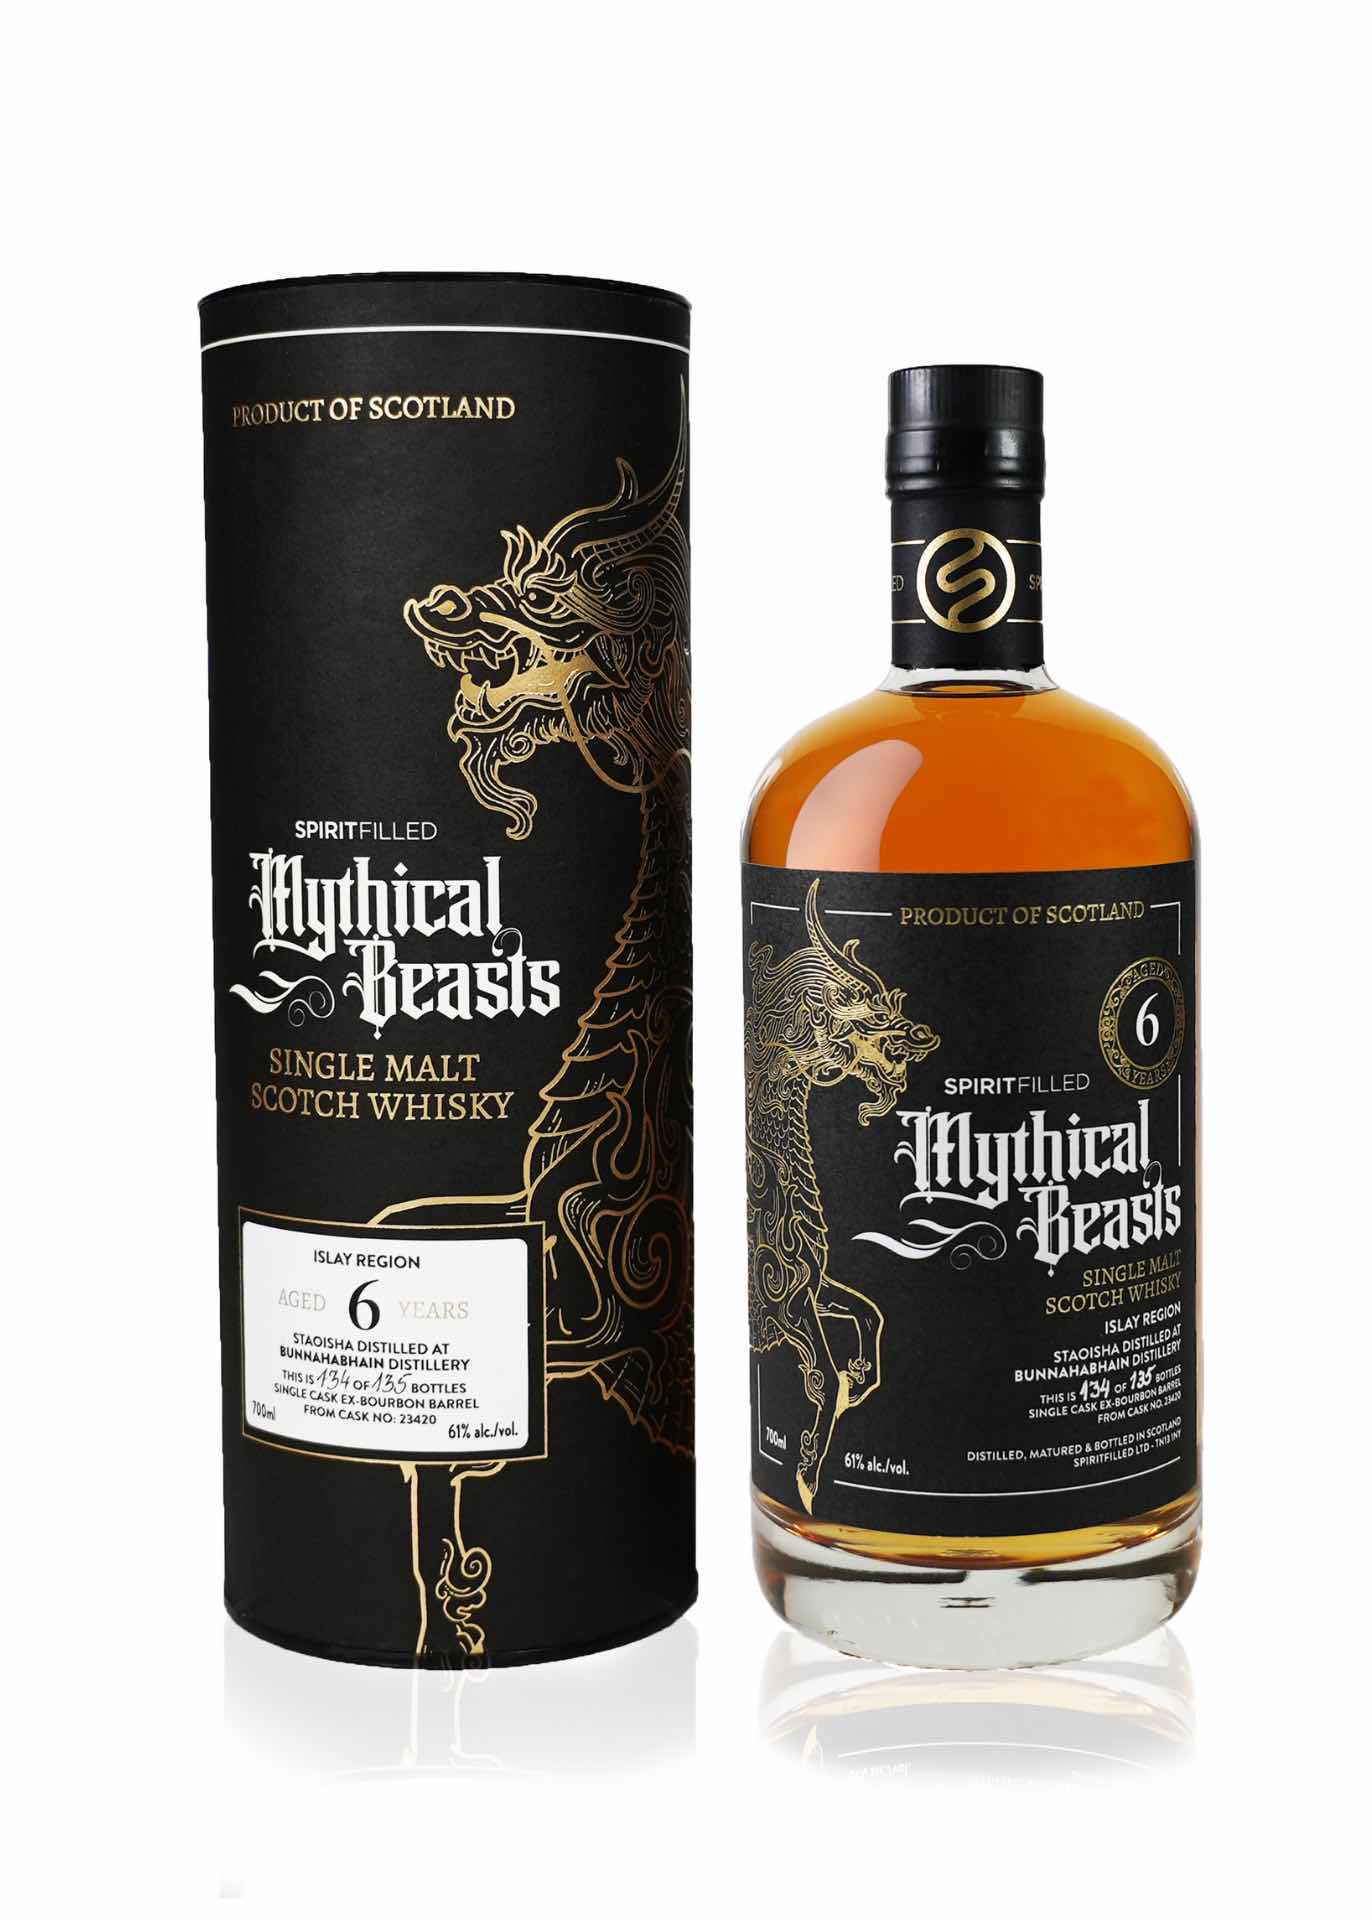 Spiritfilled Mythical Beasts Staoisha 6 Year Old Whisky